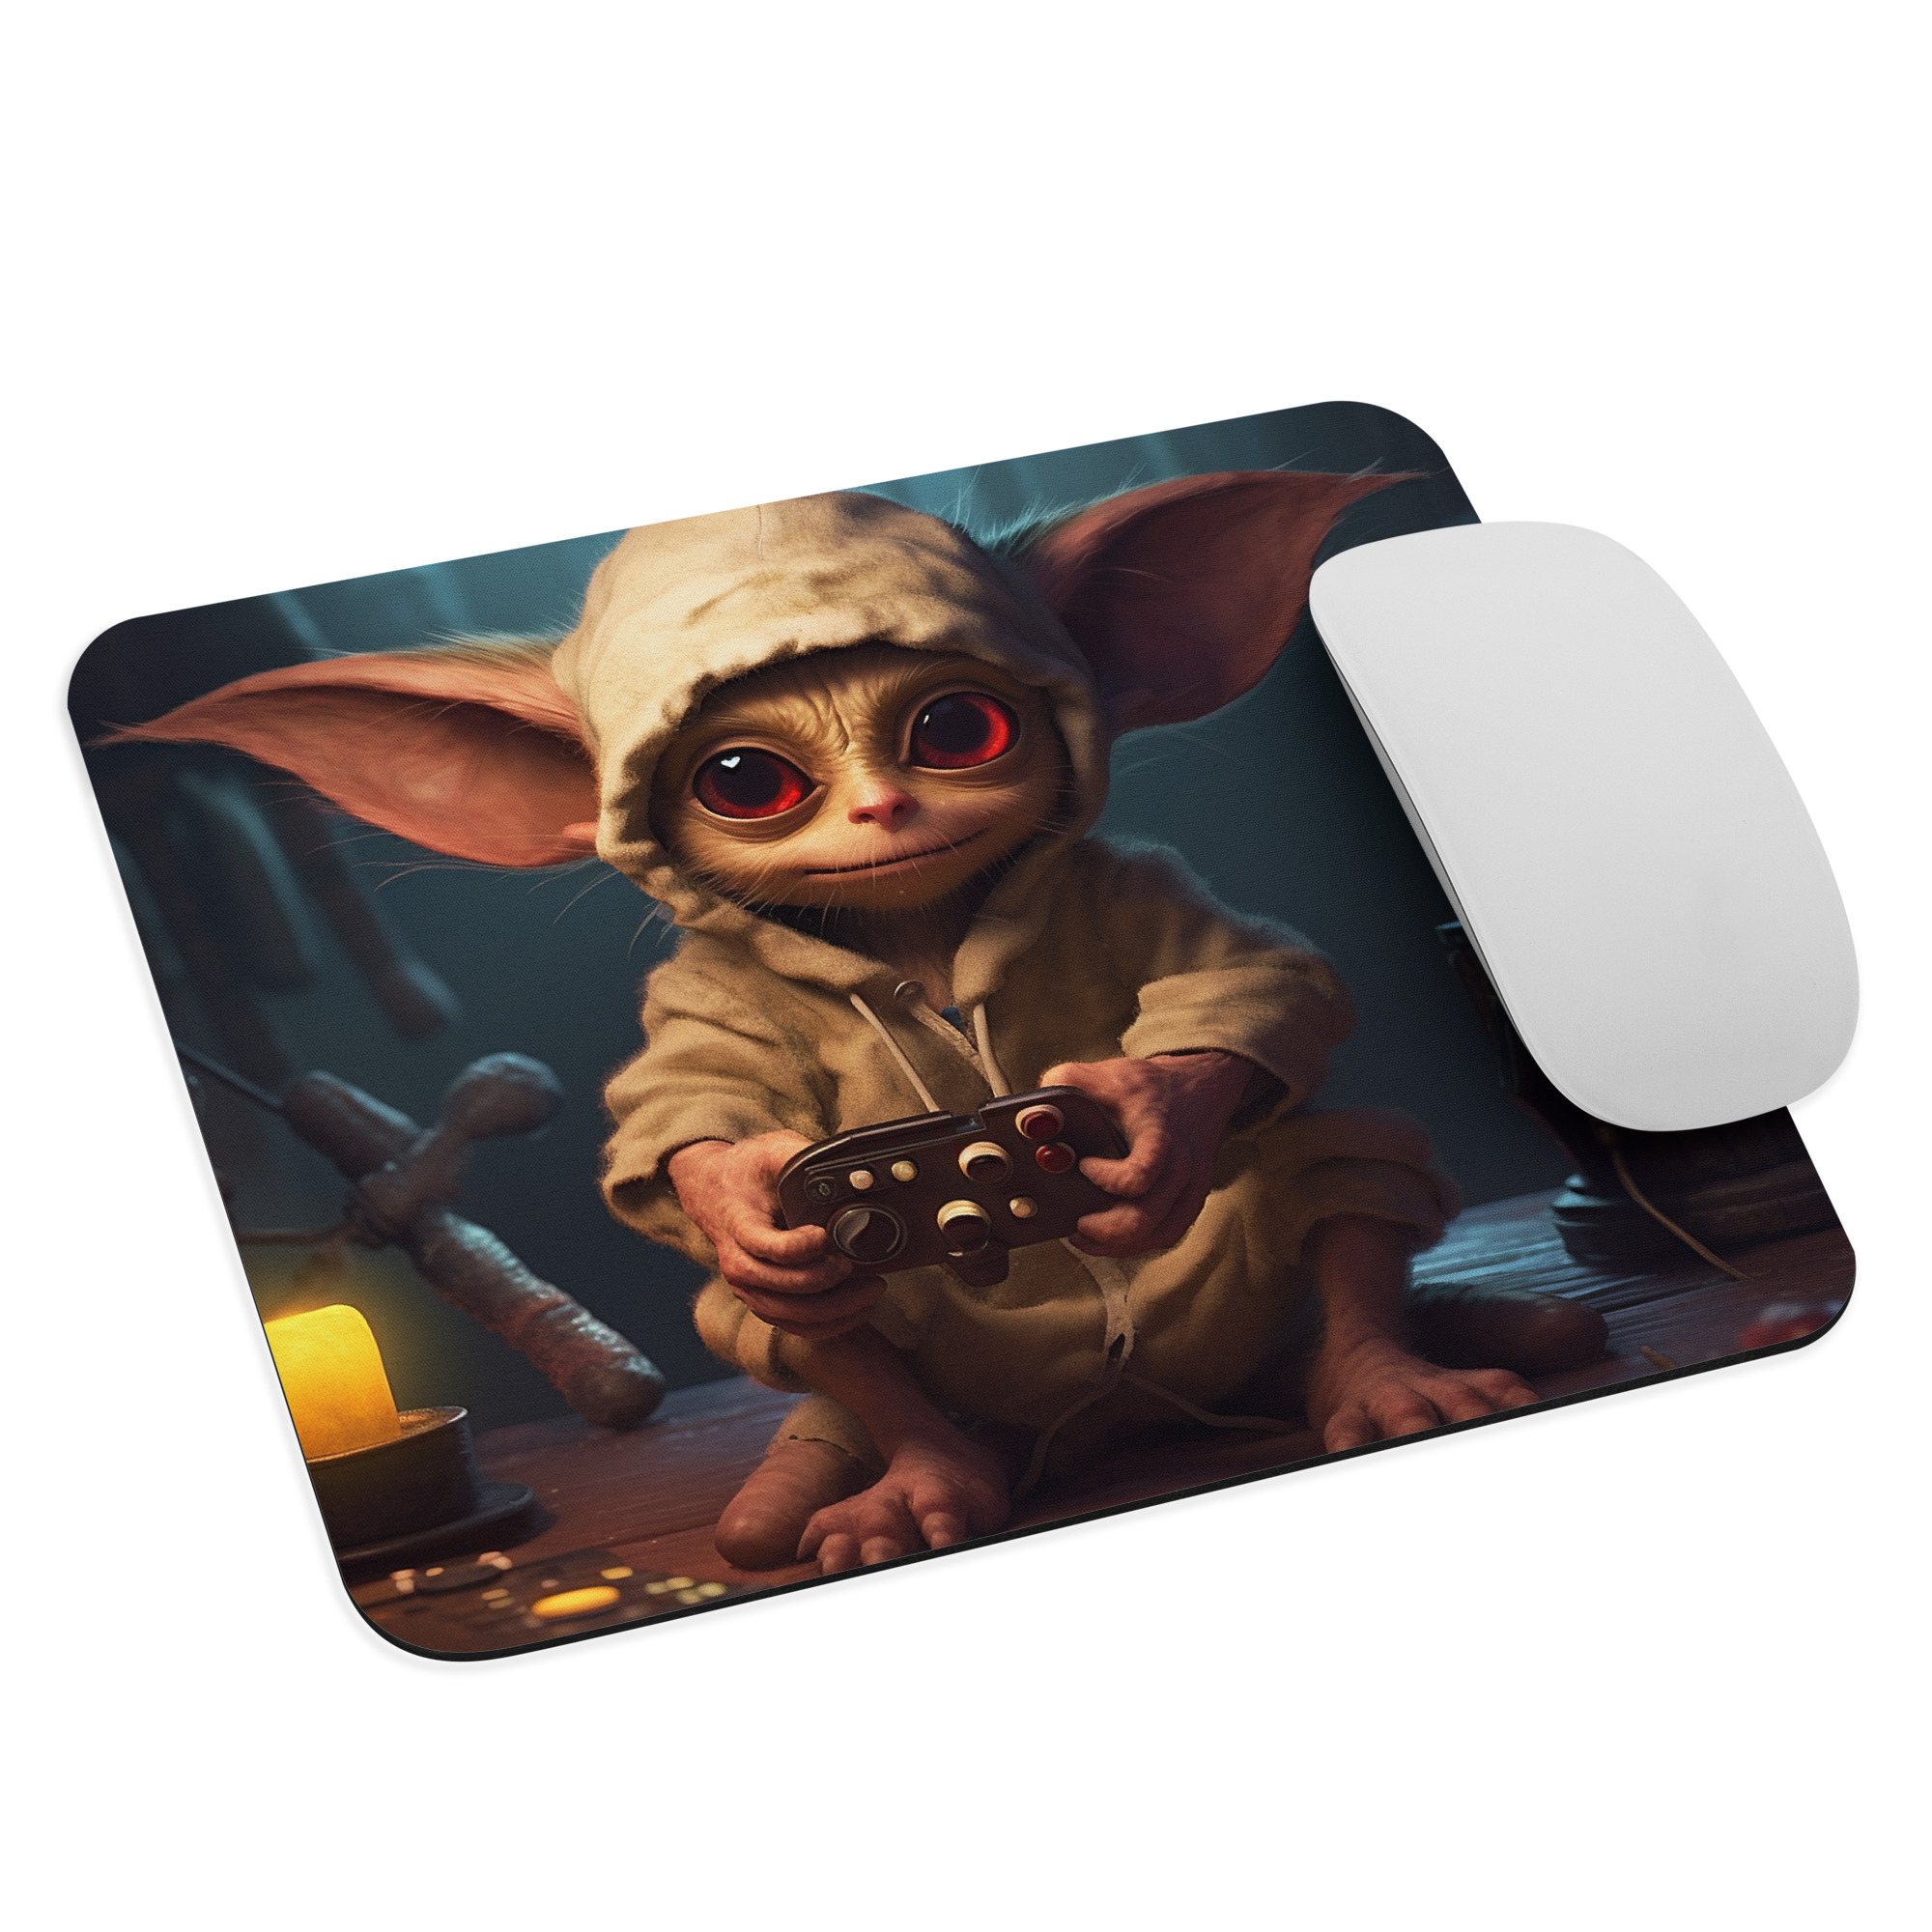 Little Gremlin Gamer | Fantasy Artwork | Mouse pad